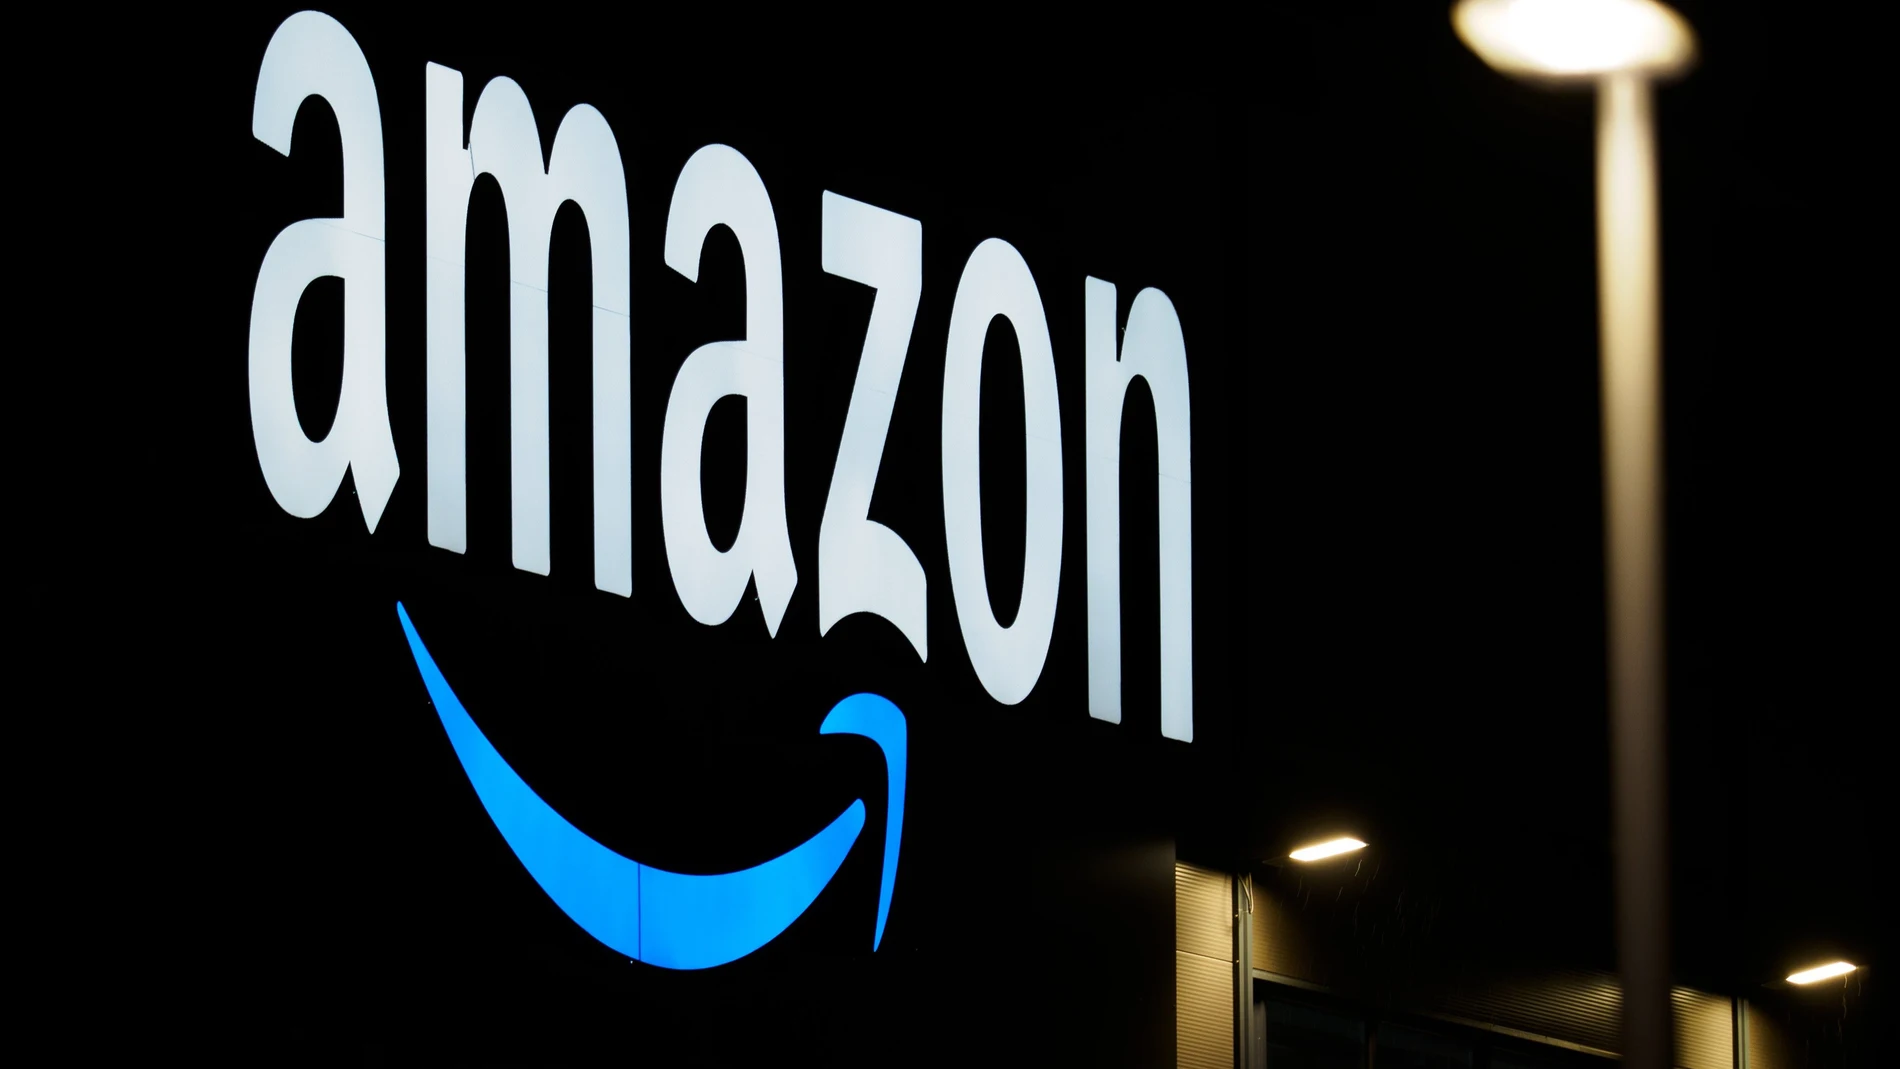 EEUU.- Amazon estudia ofrecer servicios de telefonía móvil con 'Prime' en Estados Unidos, según medios